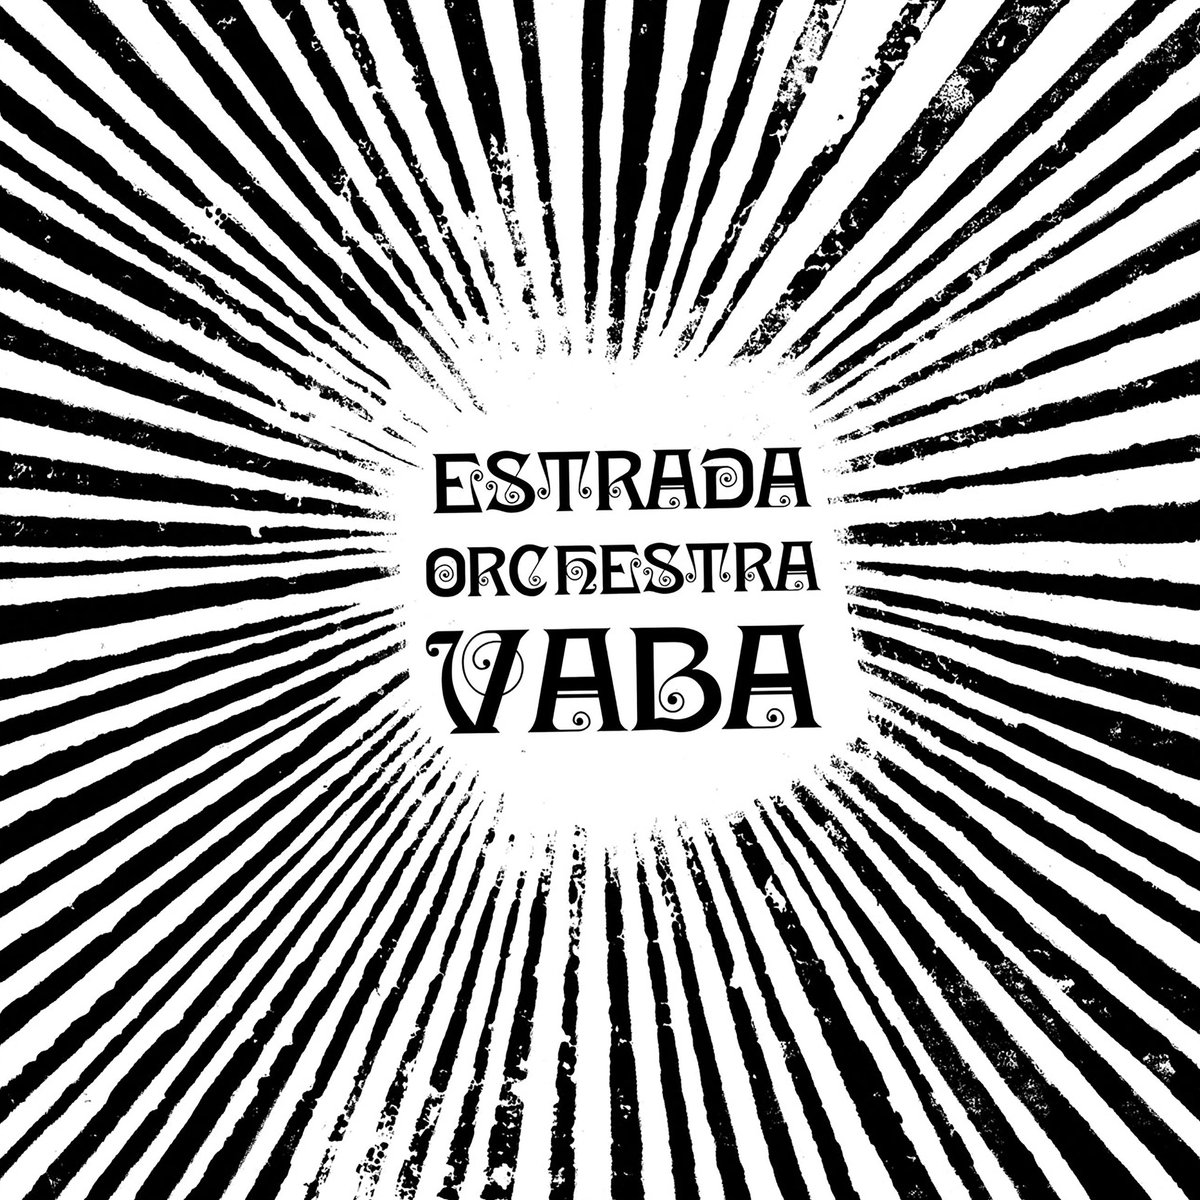 Estrada Orchestra - Vaba - FNR-089 - FNR